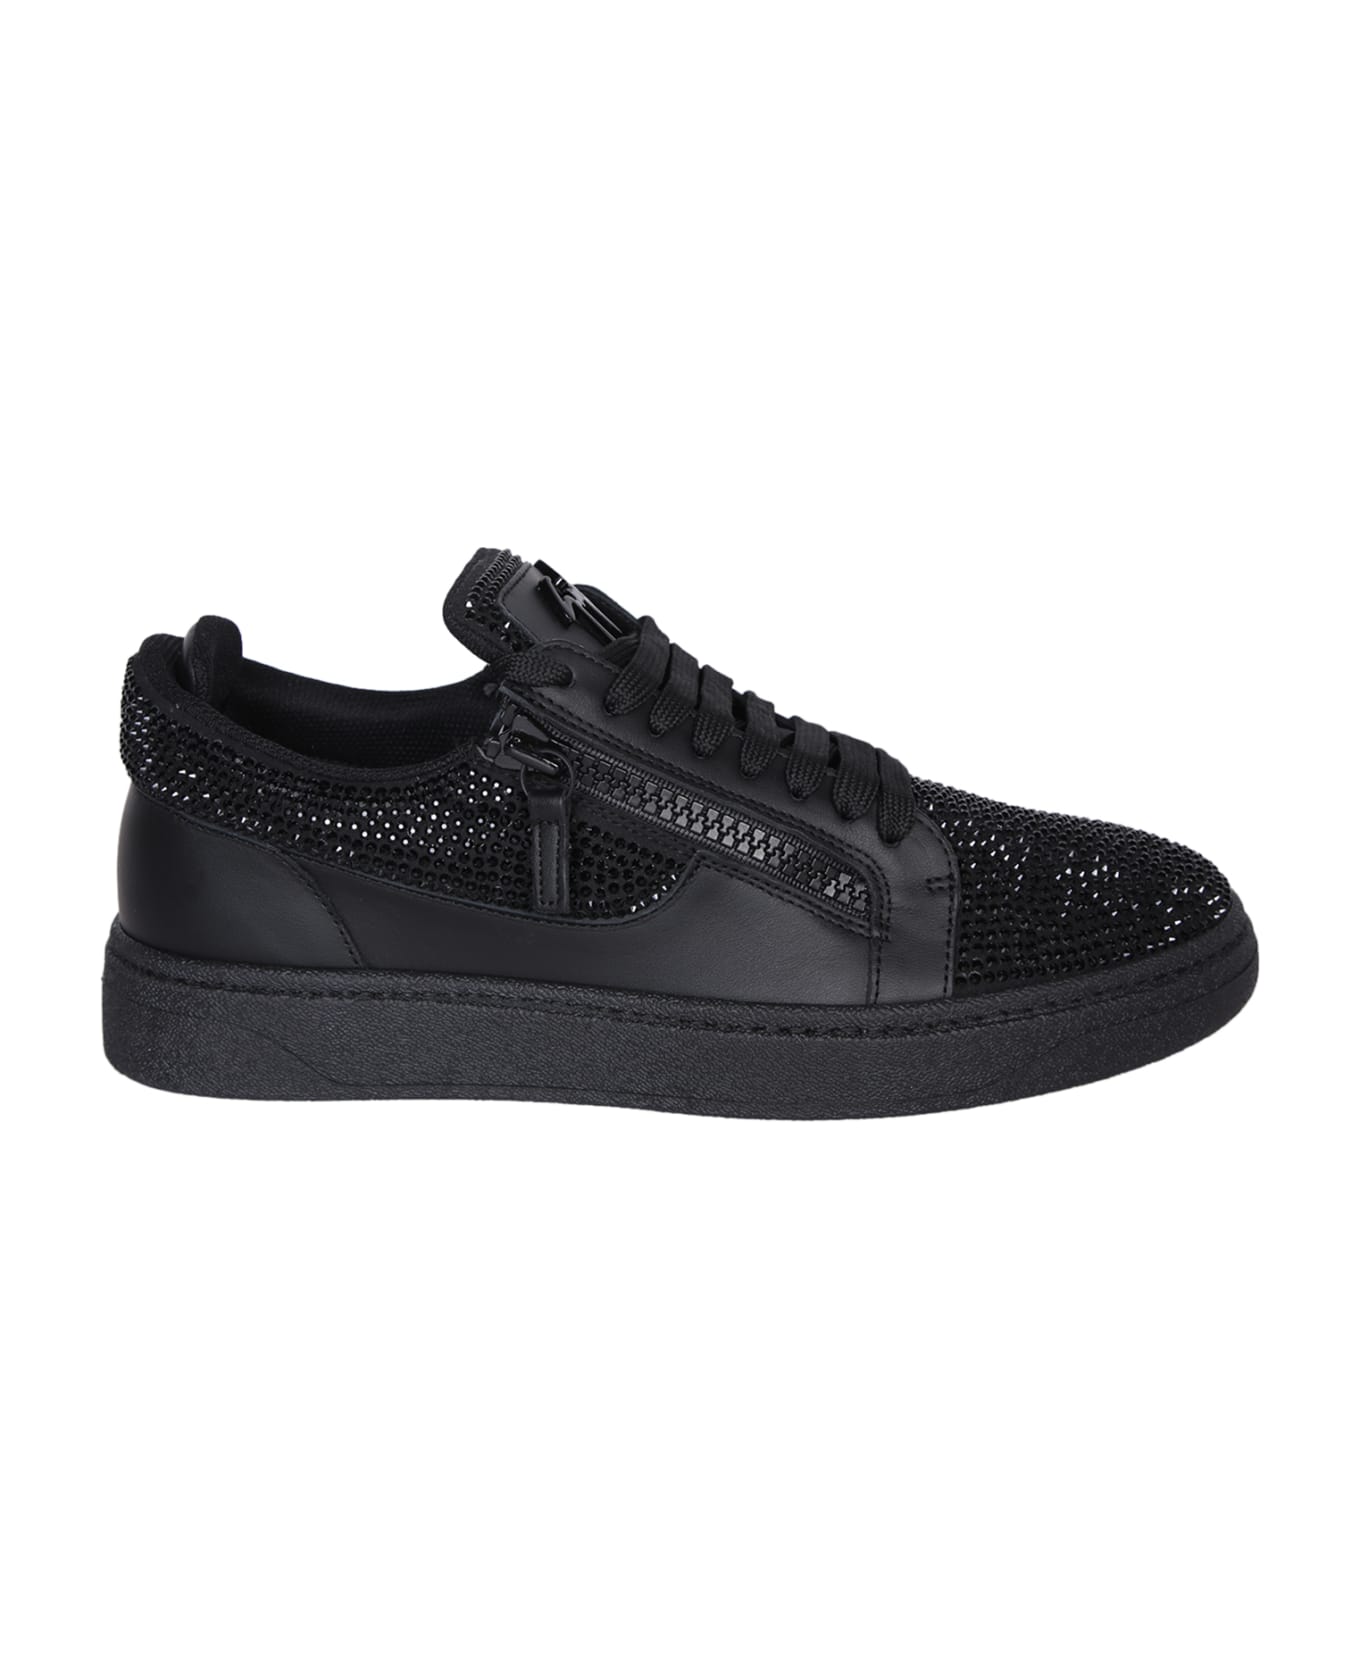 Giuseppe Zanotti Gz94 Black Sneakers - Black